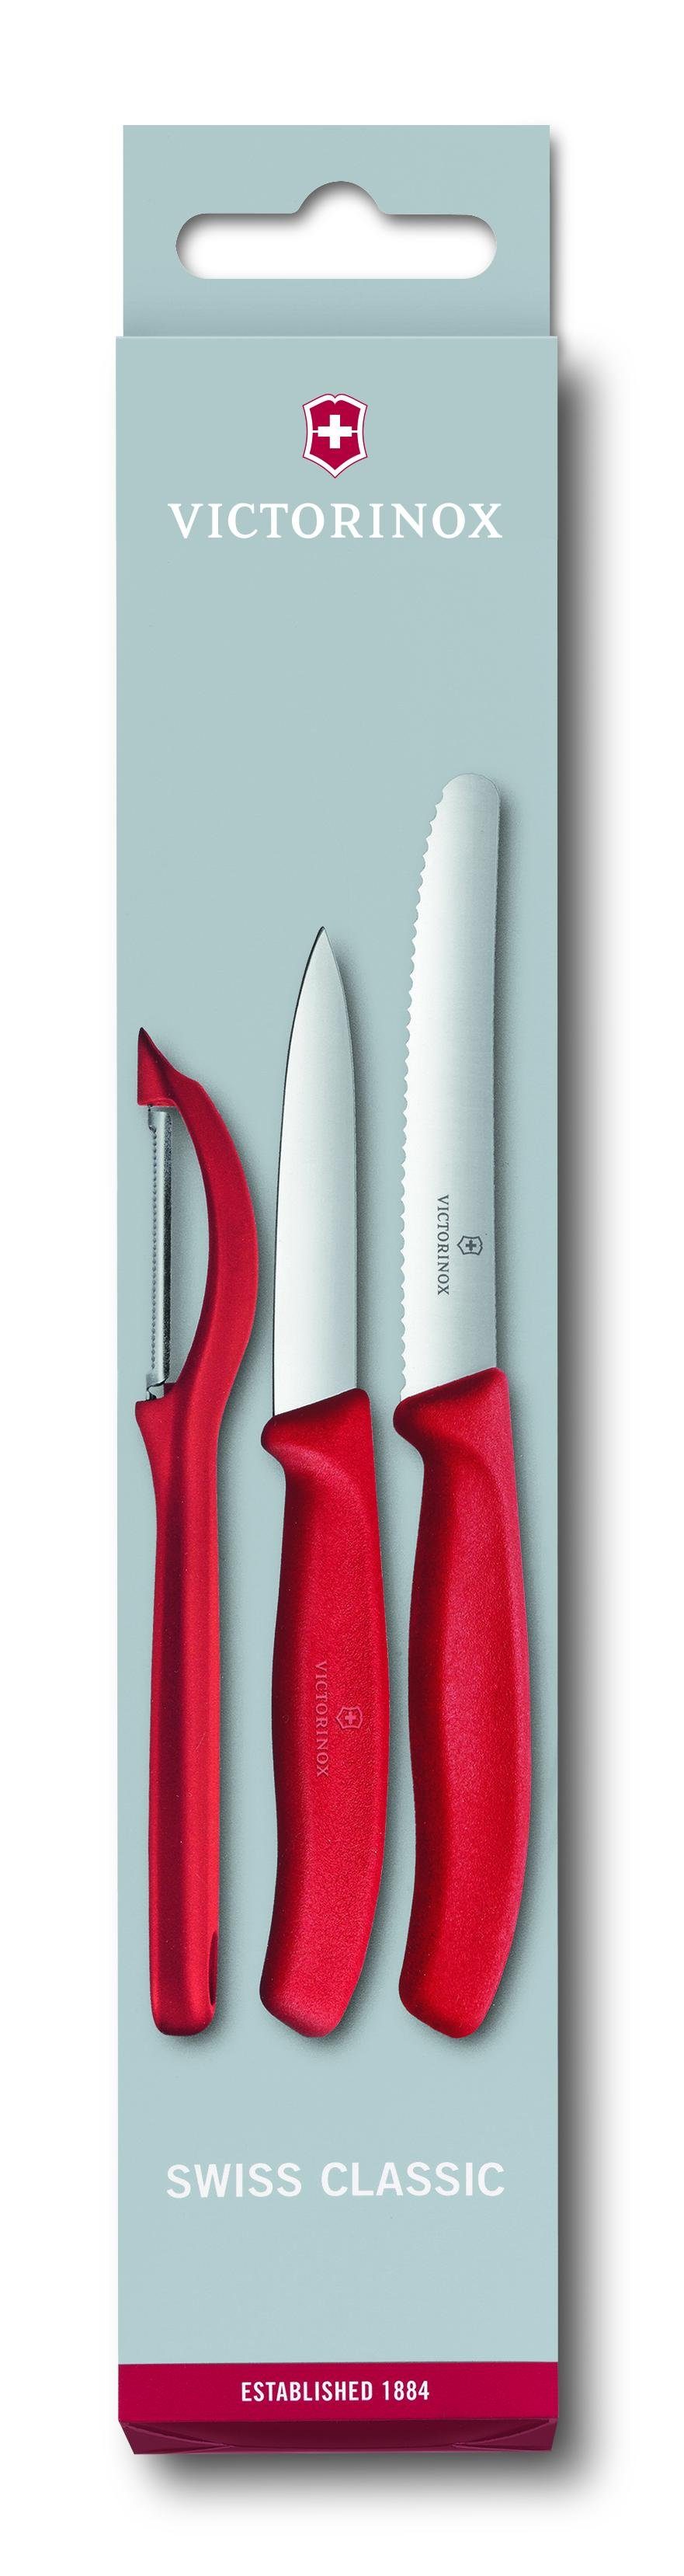 Victorinox Taschenmesser Swiss Classic Gemüsemesser-Set mit Schäler, 3-teilig, rot